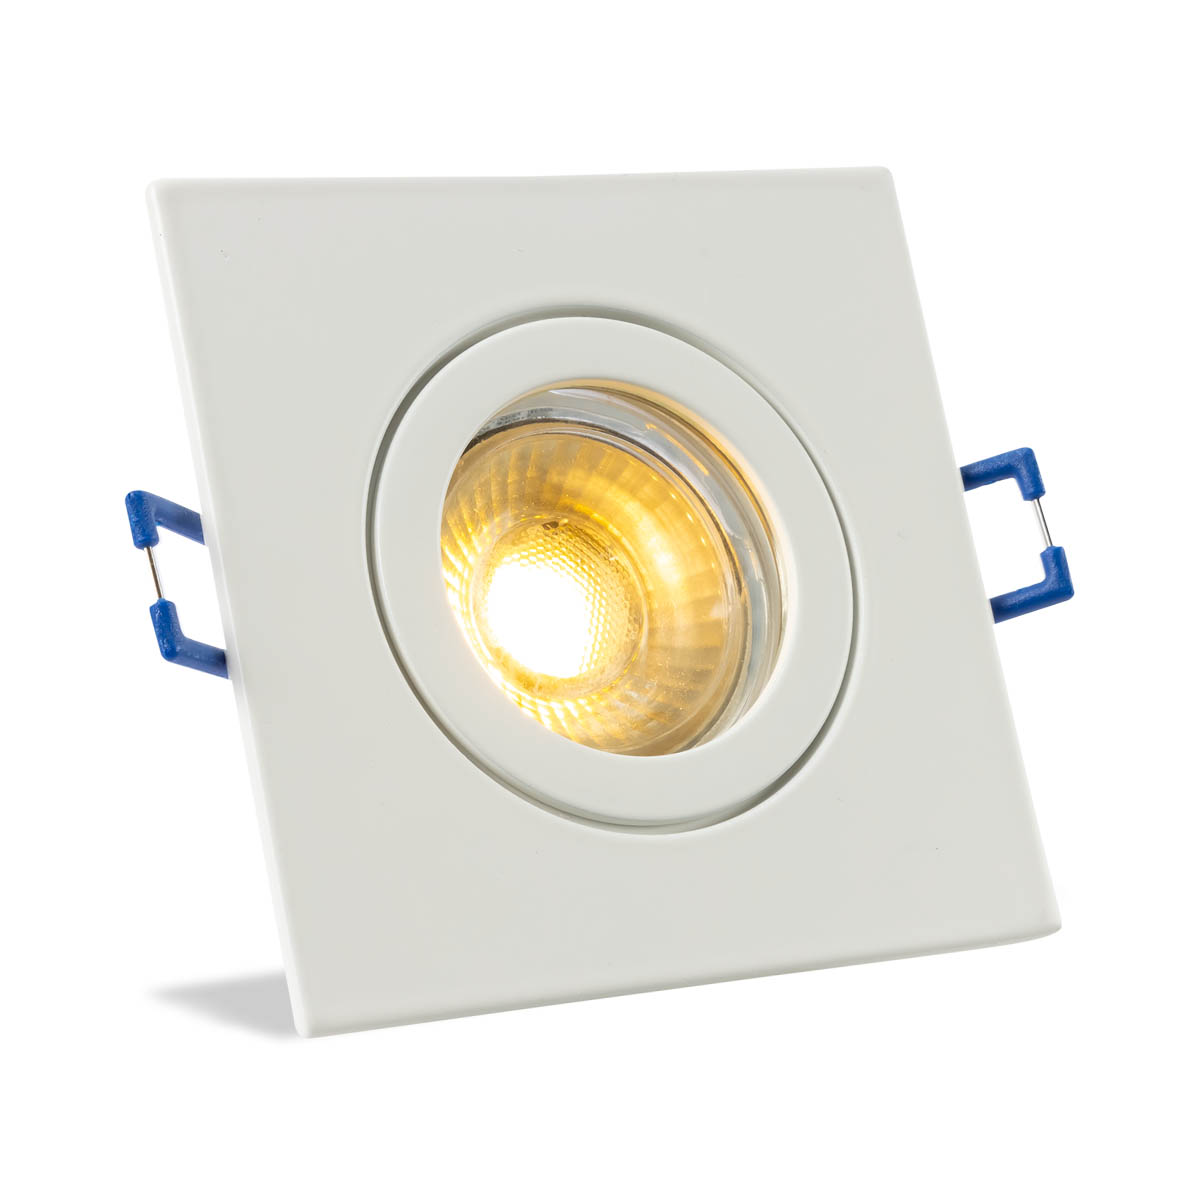 Einbauspot IP44 eckig - Abdeckring:  weiß - LED Leuchtmittel:  GU10 5W warmweiß dimmbar